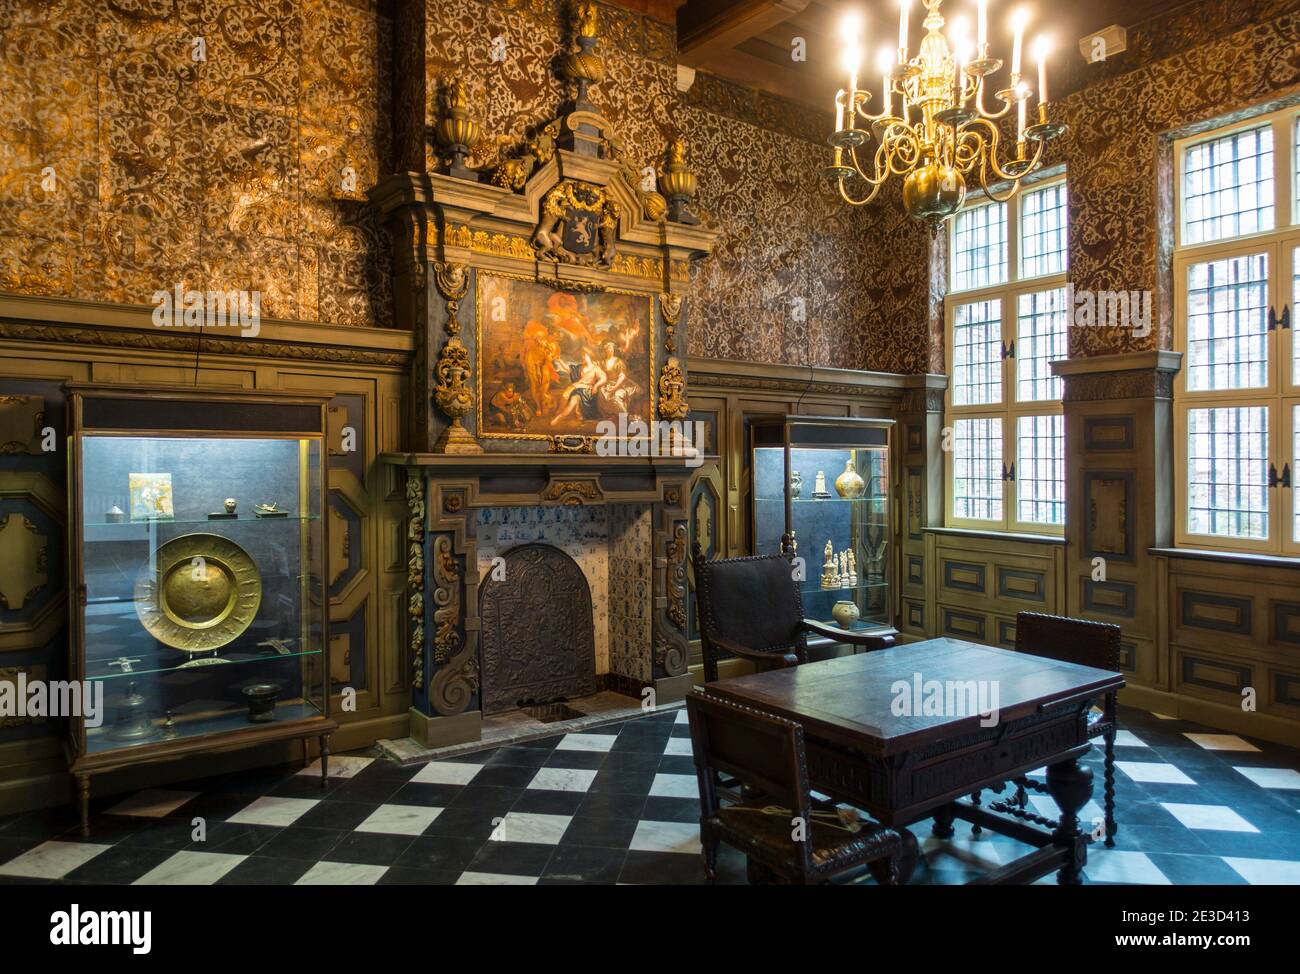 Goldene Lederbehänge und Verkleidungen der Rathausschatzkammer aus dem 17. Jahrhundert im STAM, Stadtmuseum Gent, Ostflandern, Belgien Stockfoto